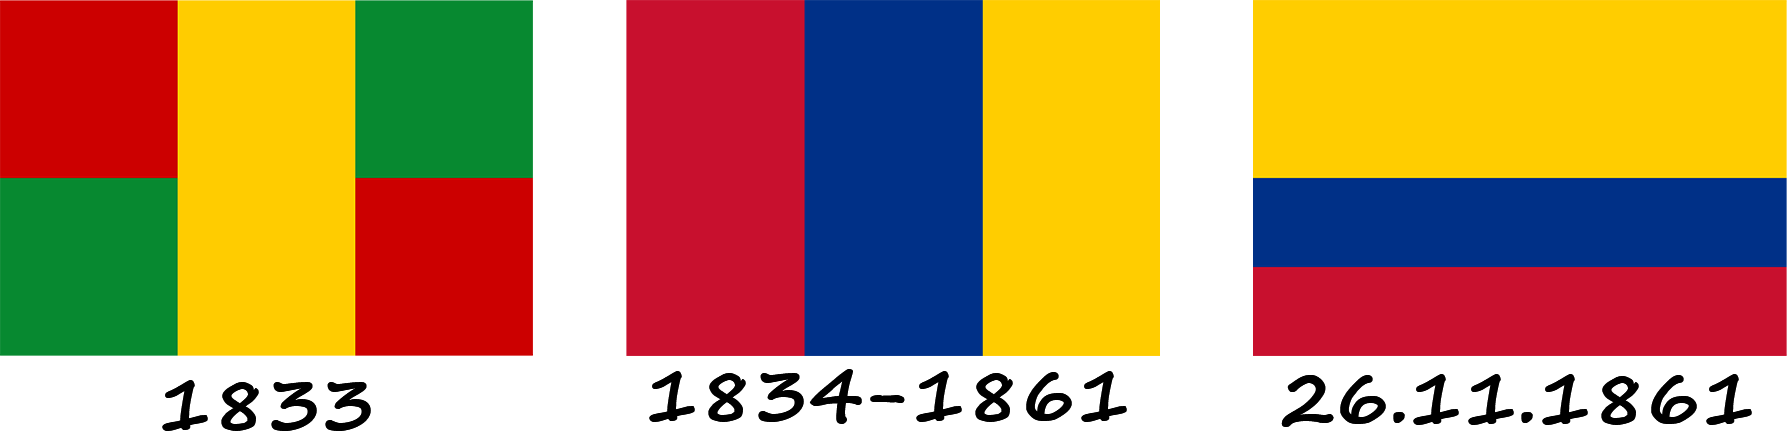 Histoire du drapeau colombien